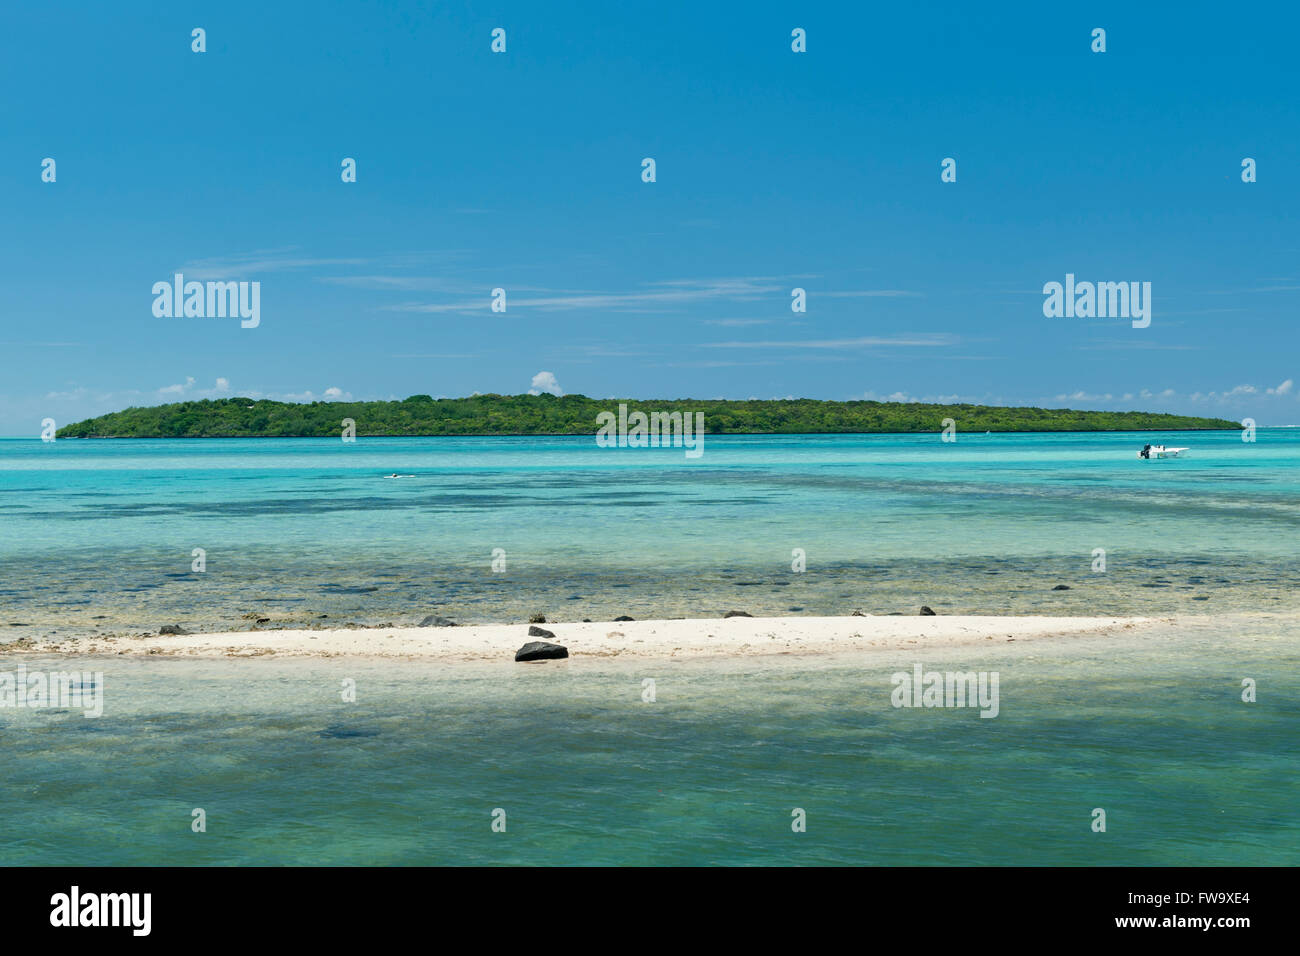 The islet of Ile Aux Aigrettes off the southeast coast of Mauritius. Stock Photo